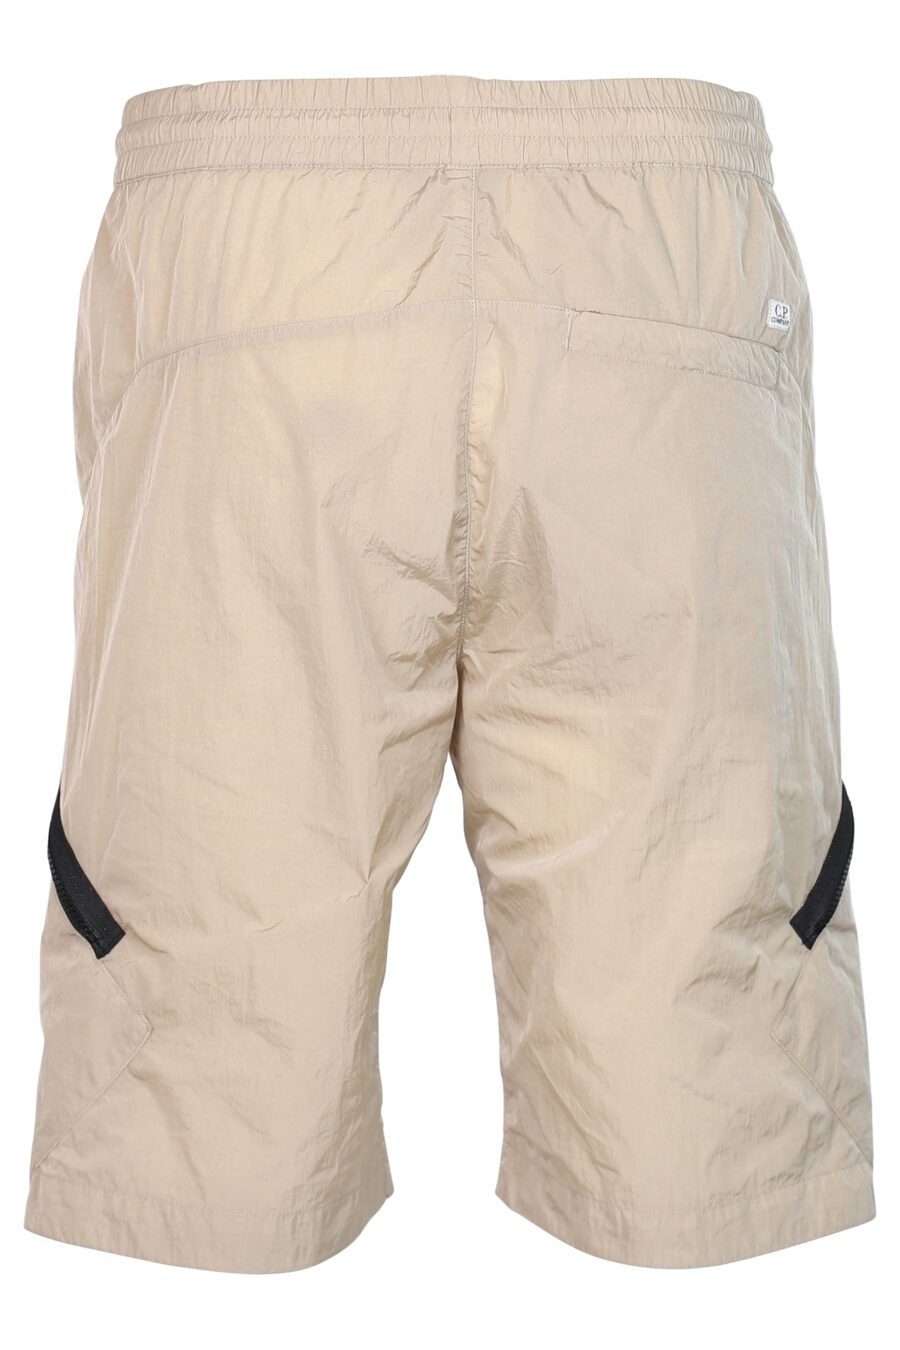 Pantalón corto beige con cremallera diagonal y logo lente - 7620943518221 3